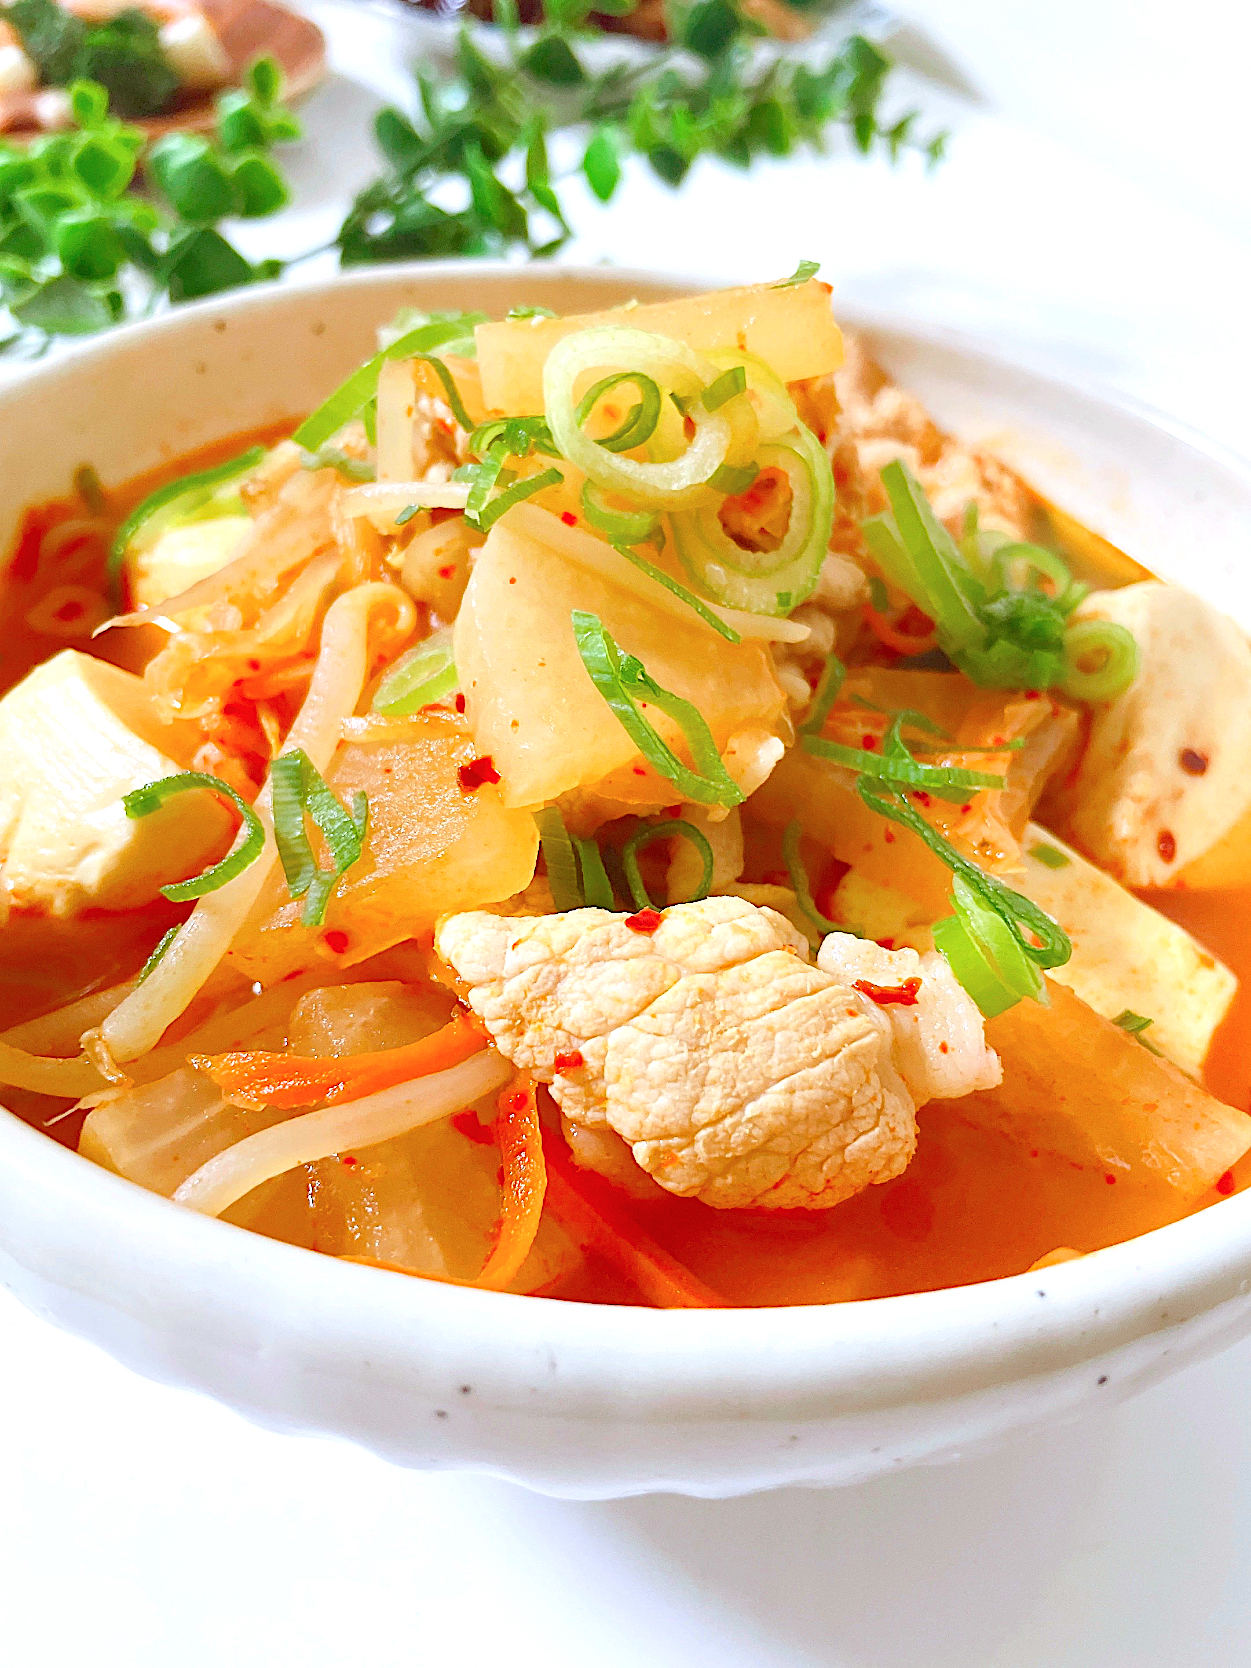 花椒辣醬の効いた野菜もりもり食べるキムチスープ